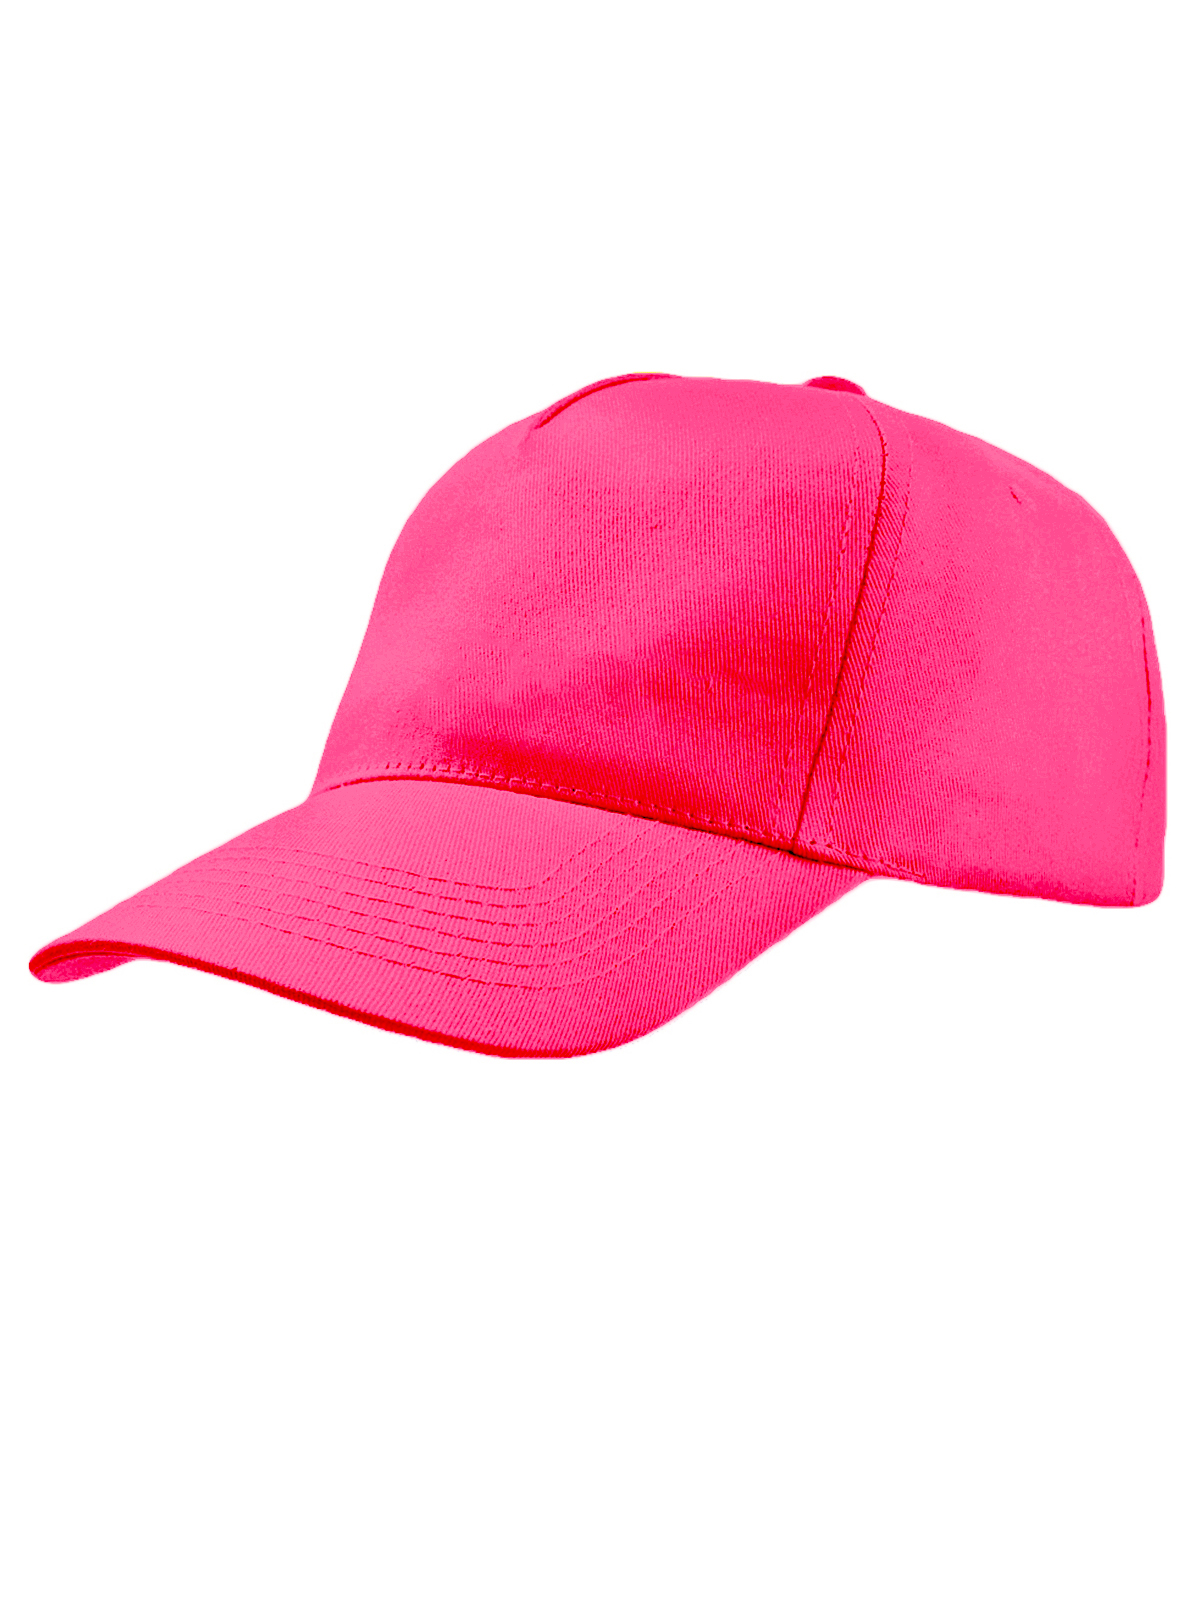 promo-cap-pink-fluo.webp